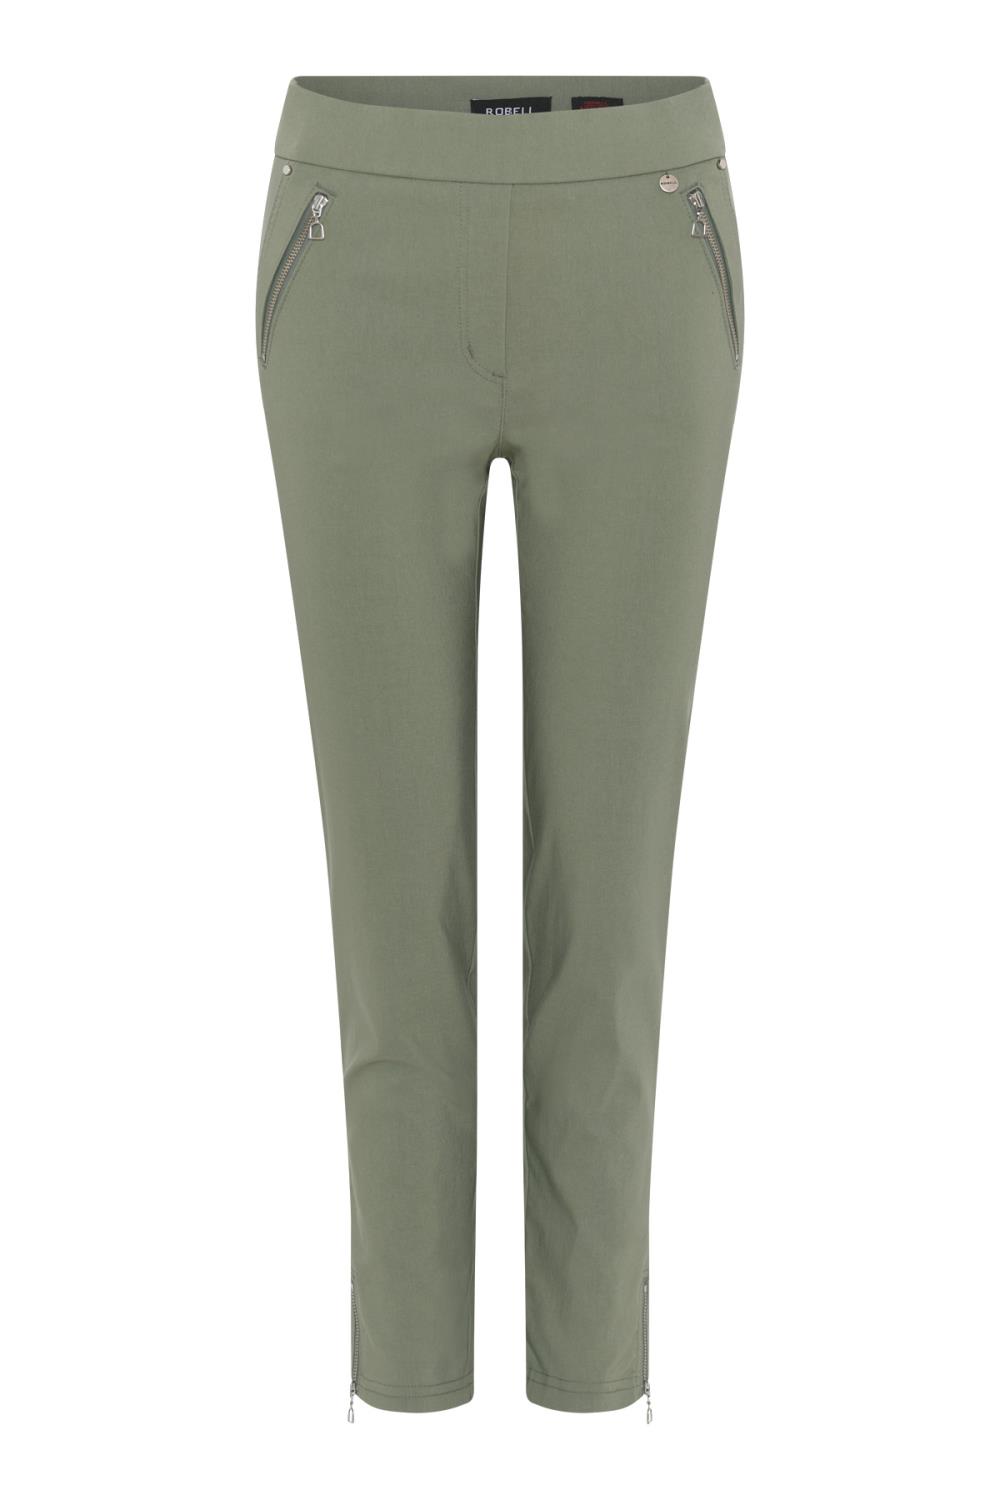 Robell Nena bukse, 68 cm, lys olivengrønn